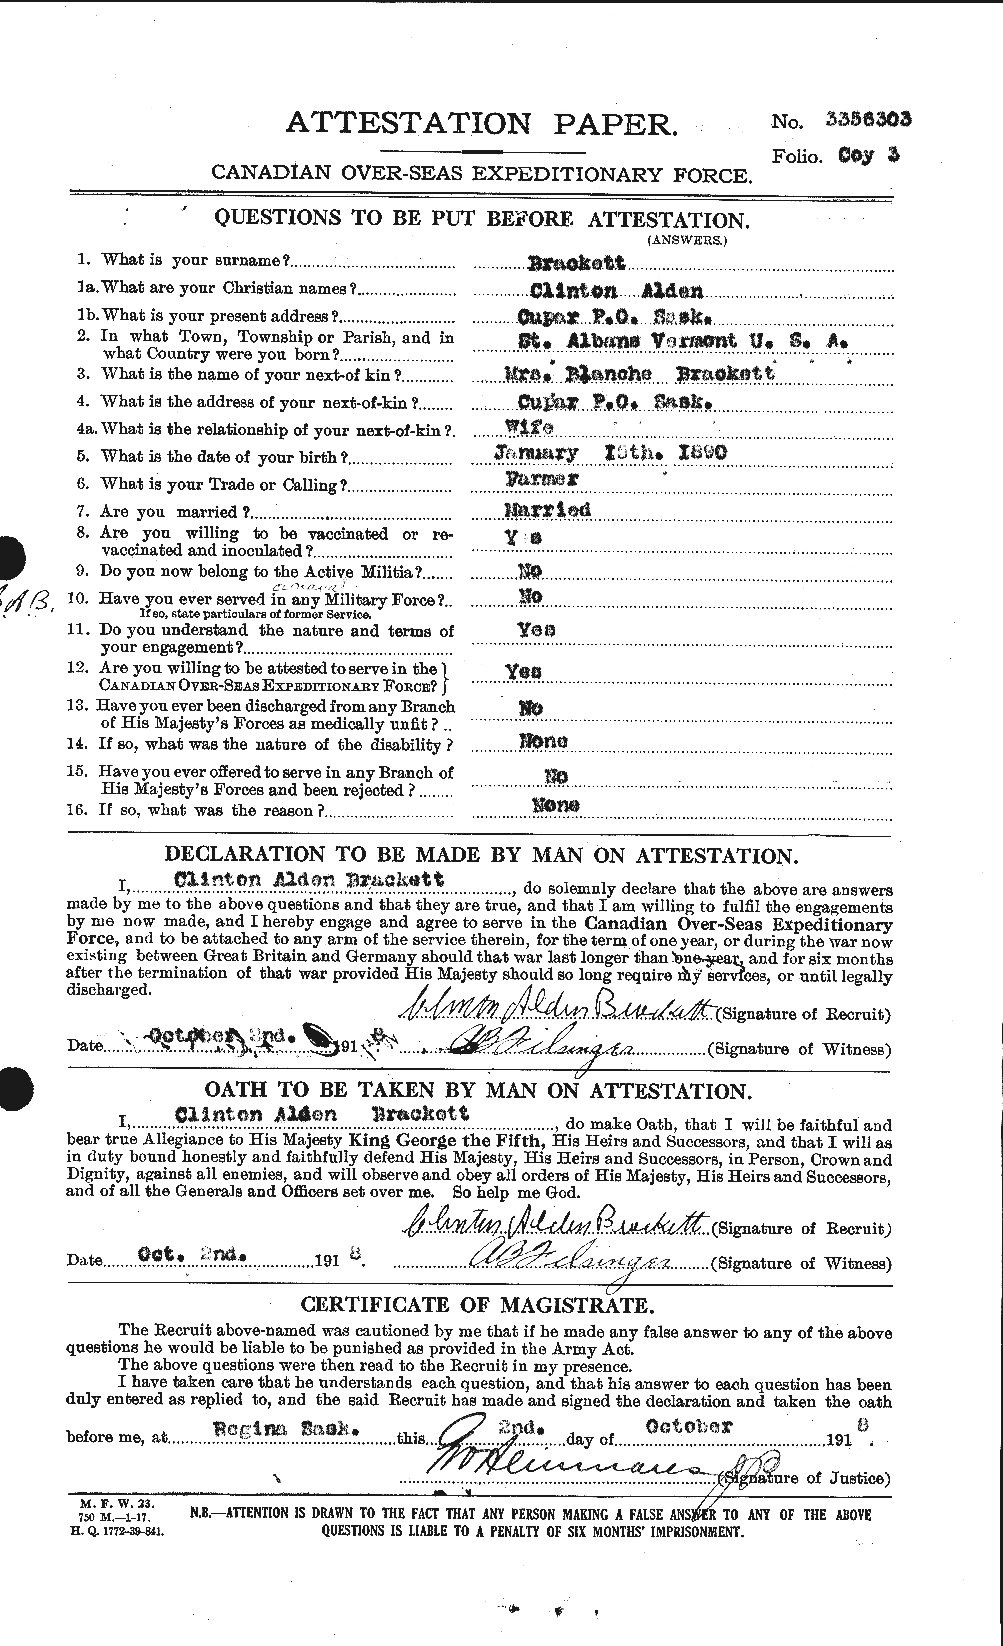 Dossiers du Personnel de la Première Guerre mondiale - CEC 254731a